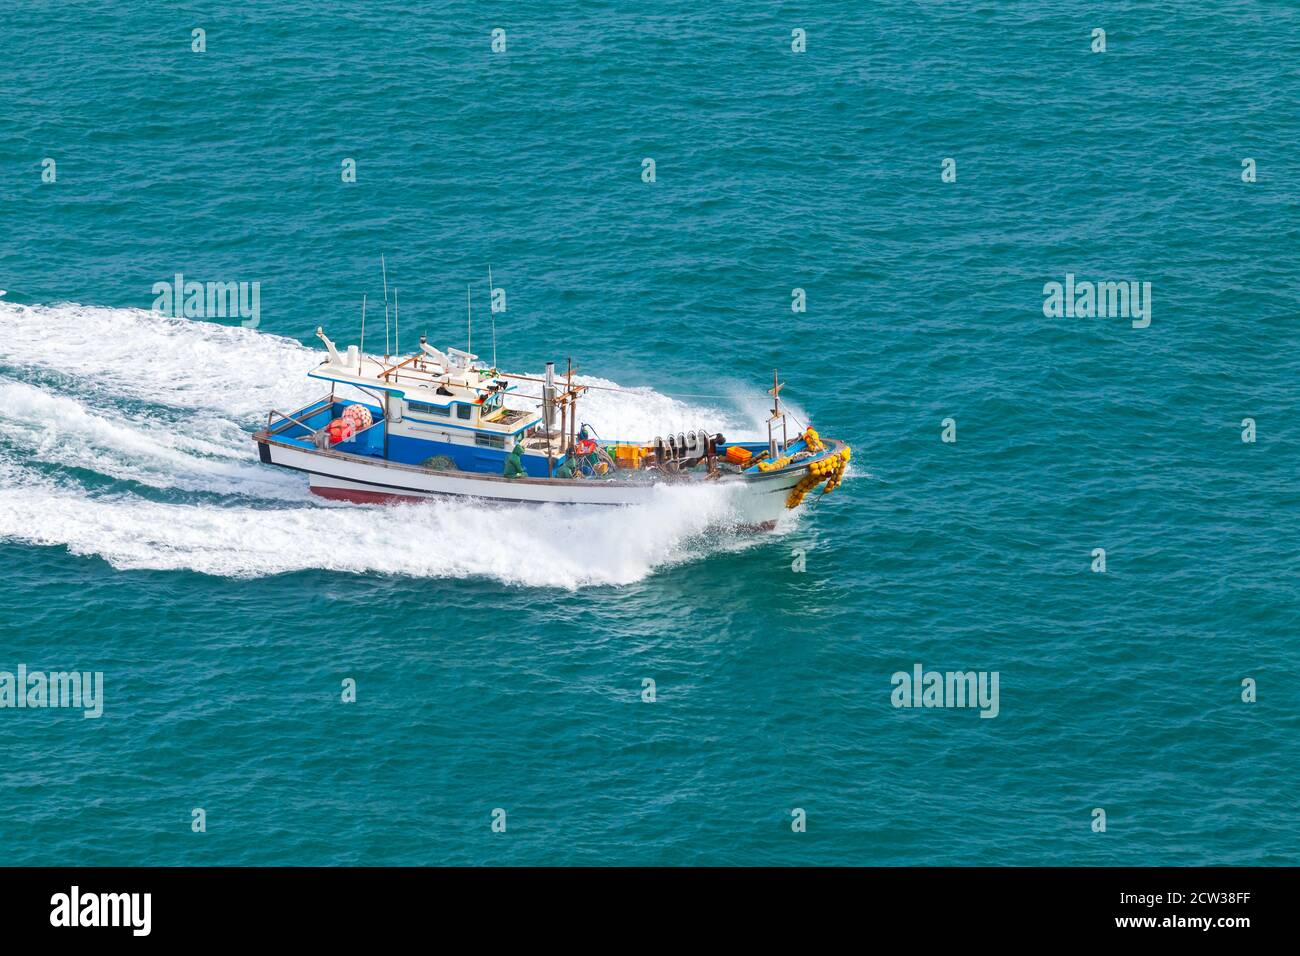 La barca da pesca va veloce nell'area di Busan in una giornata di sole, nel Mare del Giappone, nella Corea del Sud Foto Stock